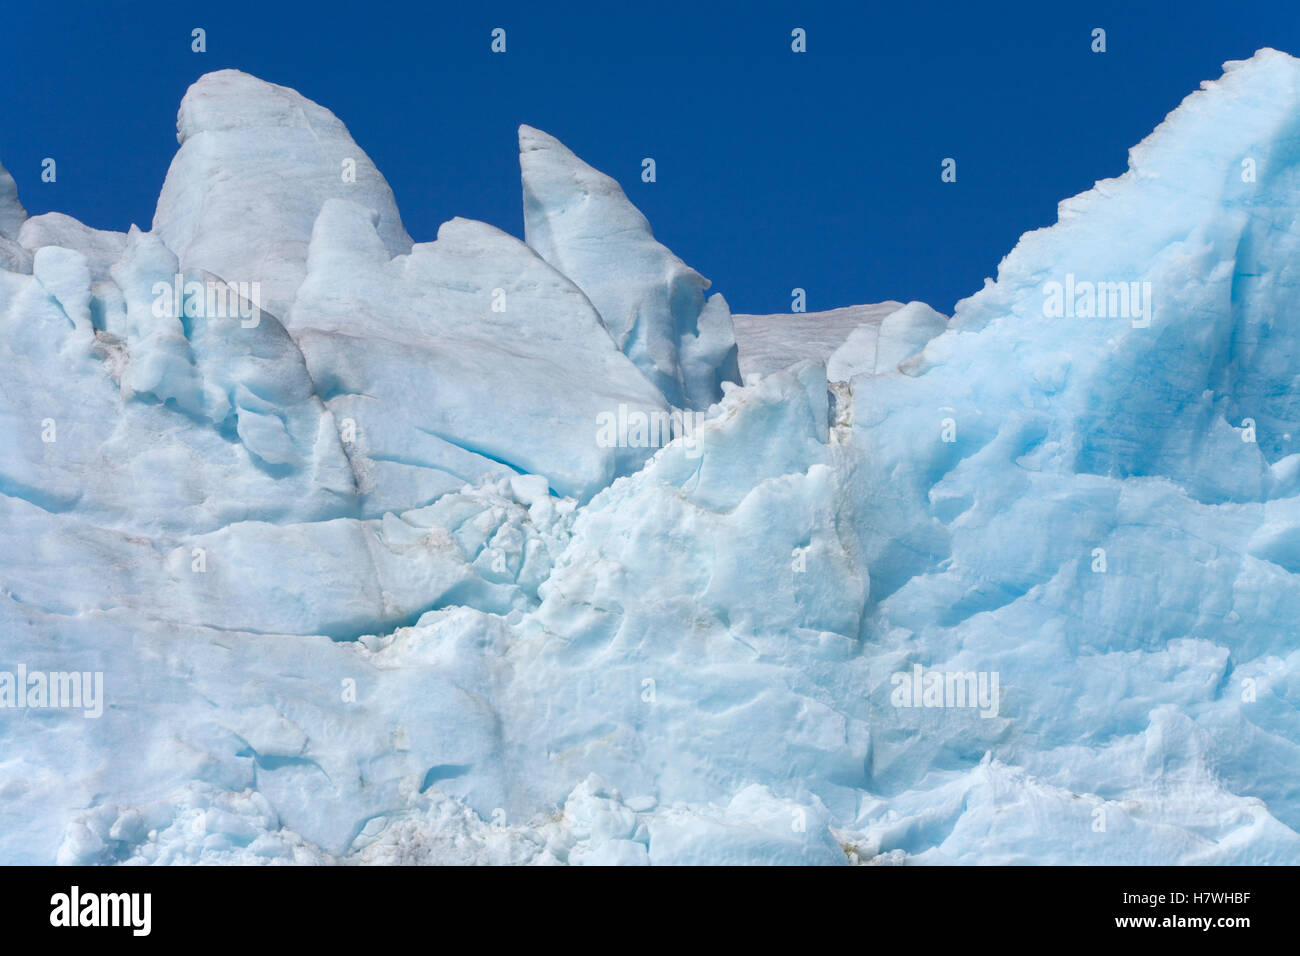 Formas Gráficas De Hielo Azul Resquicios Y Grietas De Glaciar Fortuna